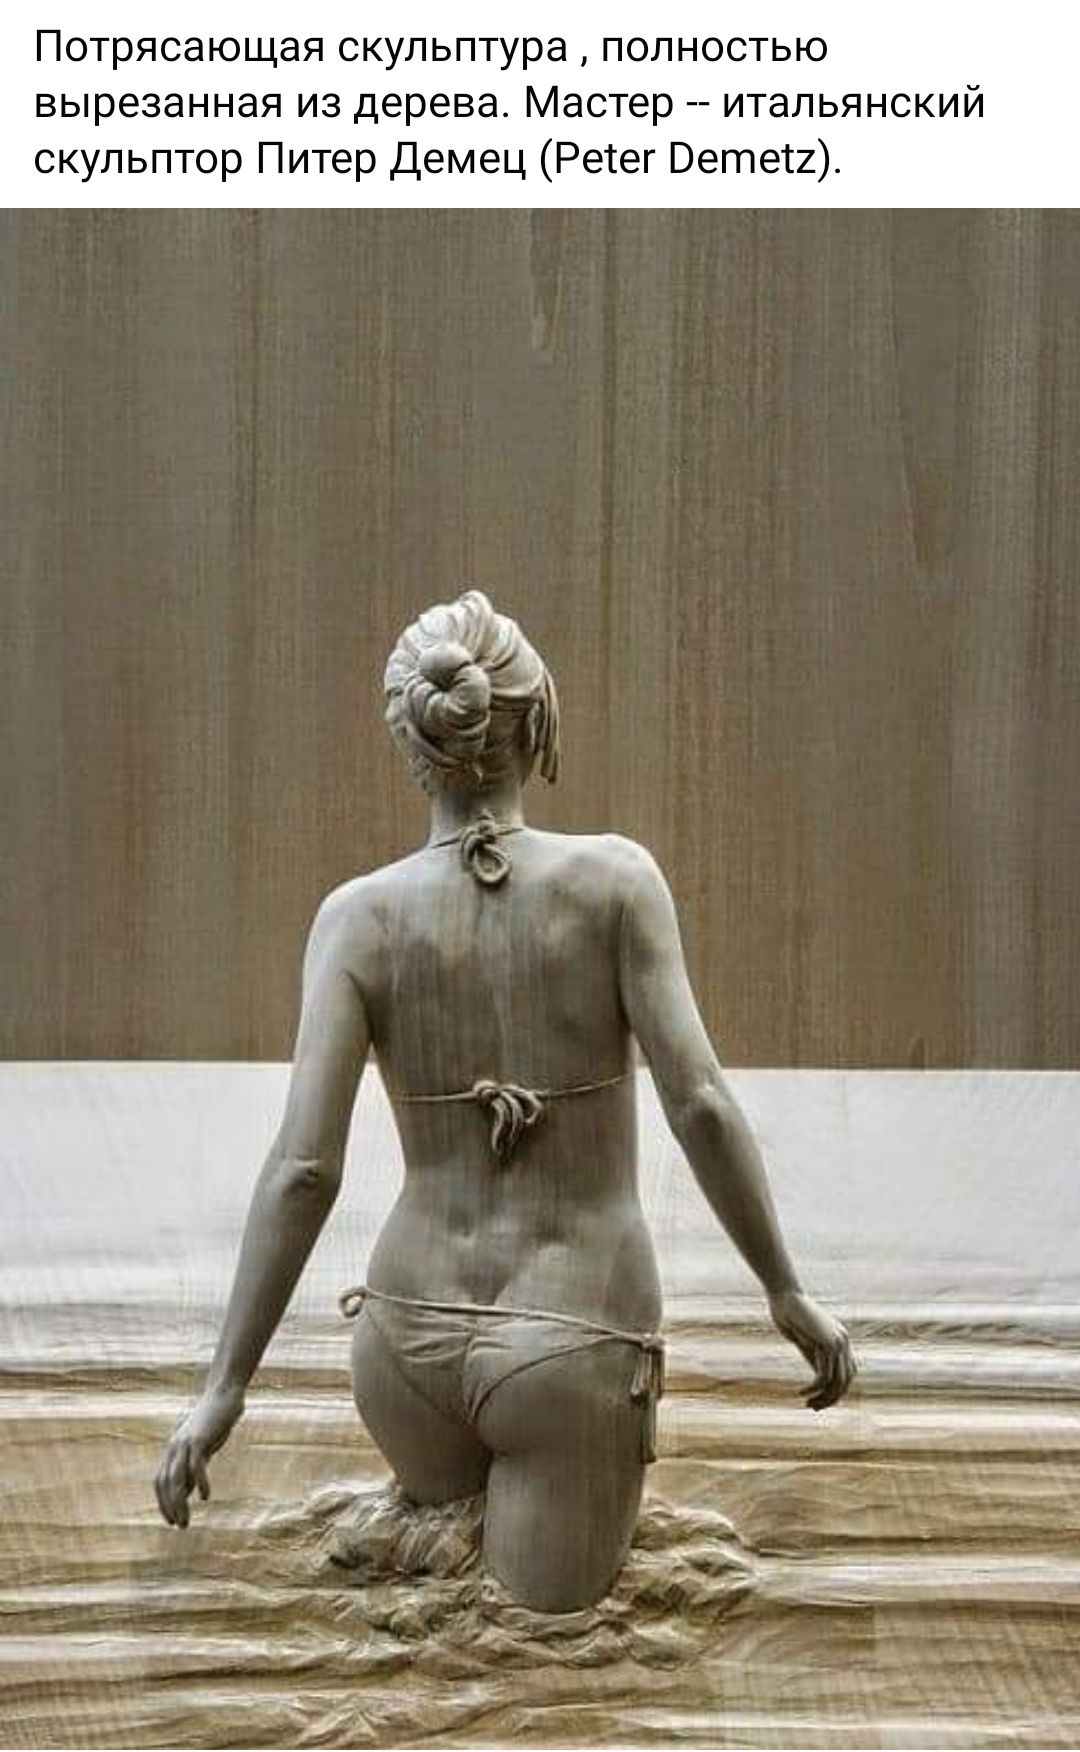 Потрясающая скульптура полностью вырезанная из дерева Мастер итальянский скульптор Питер Демец Реіег Ветви